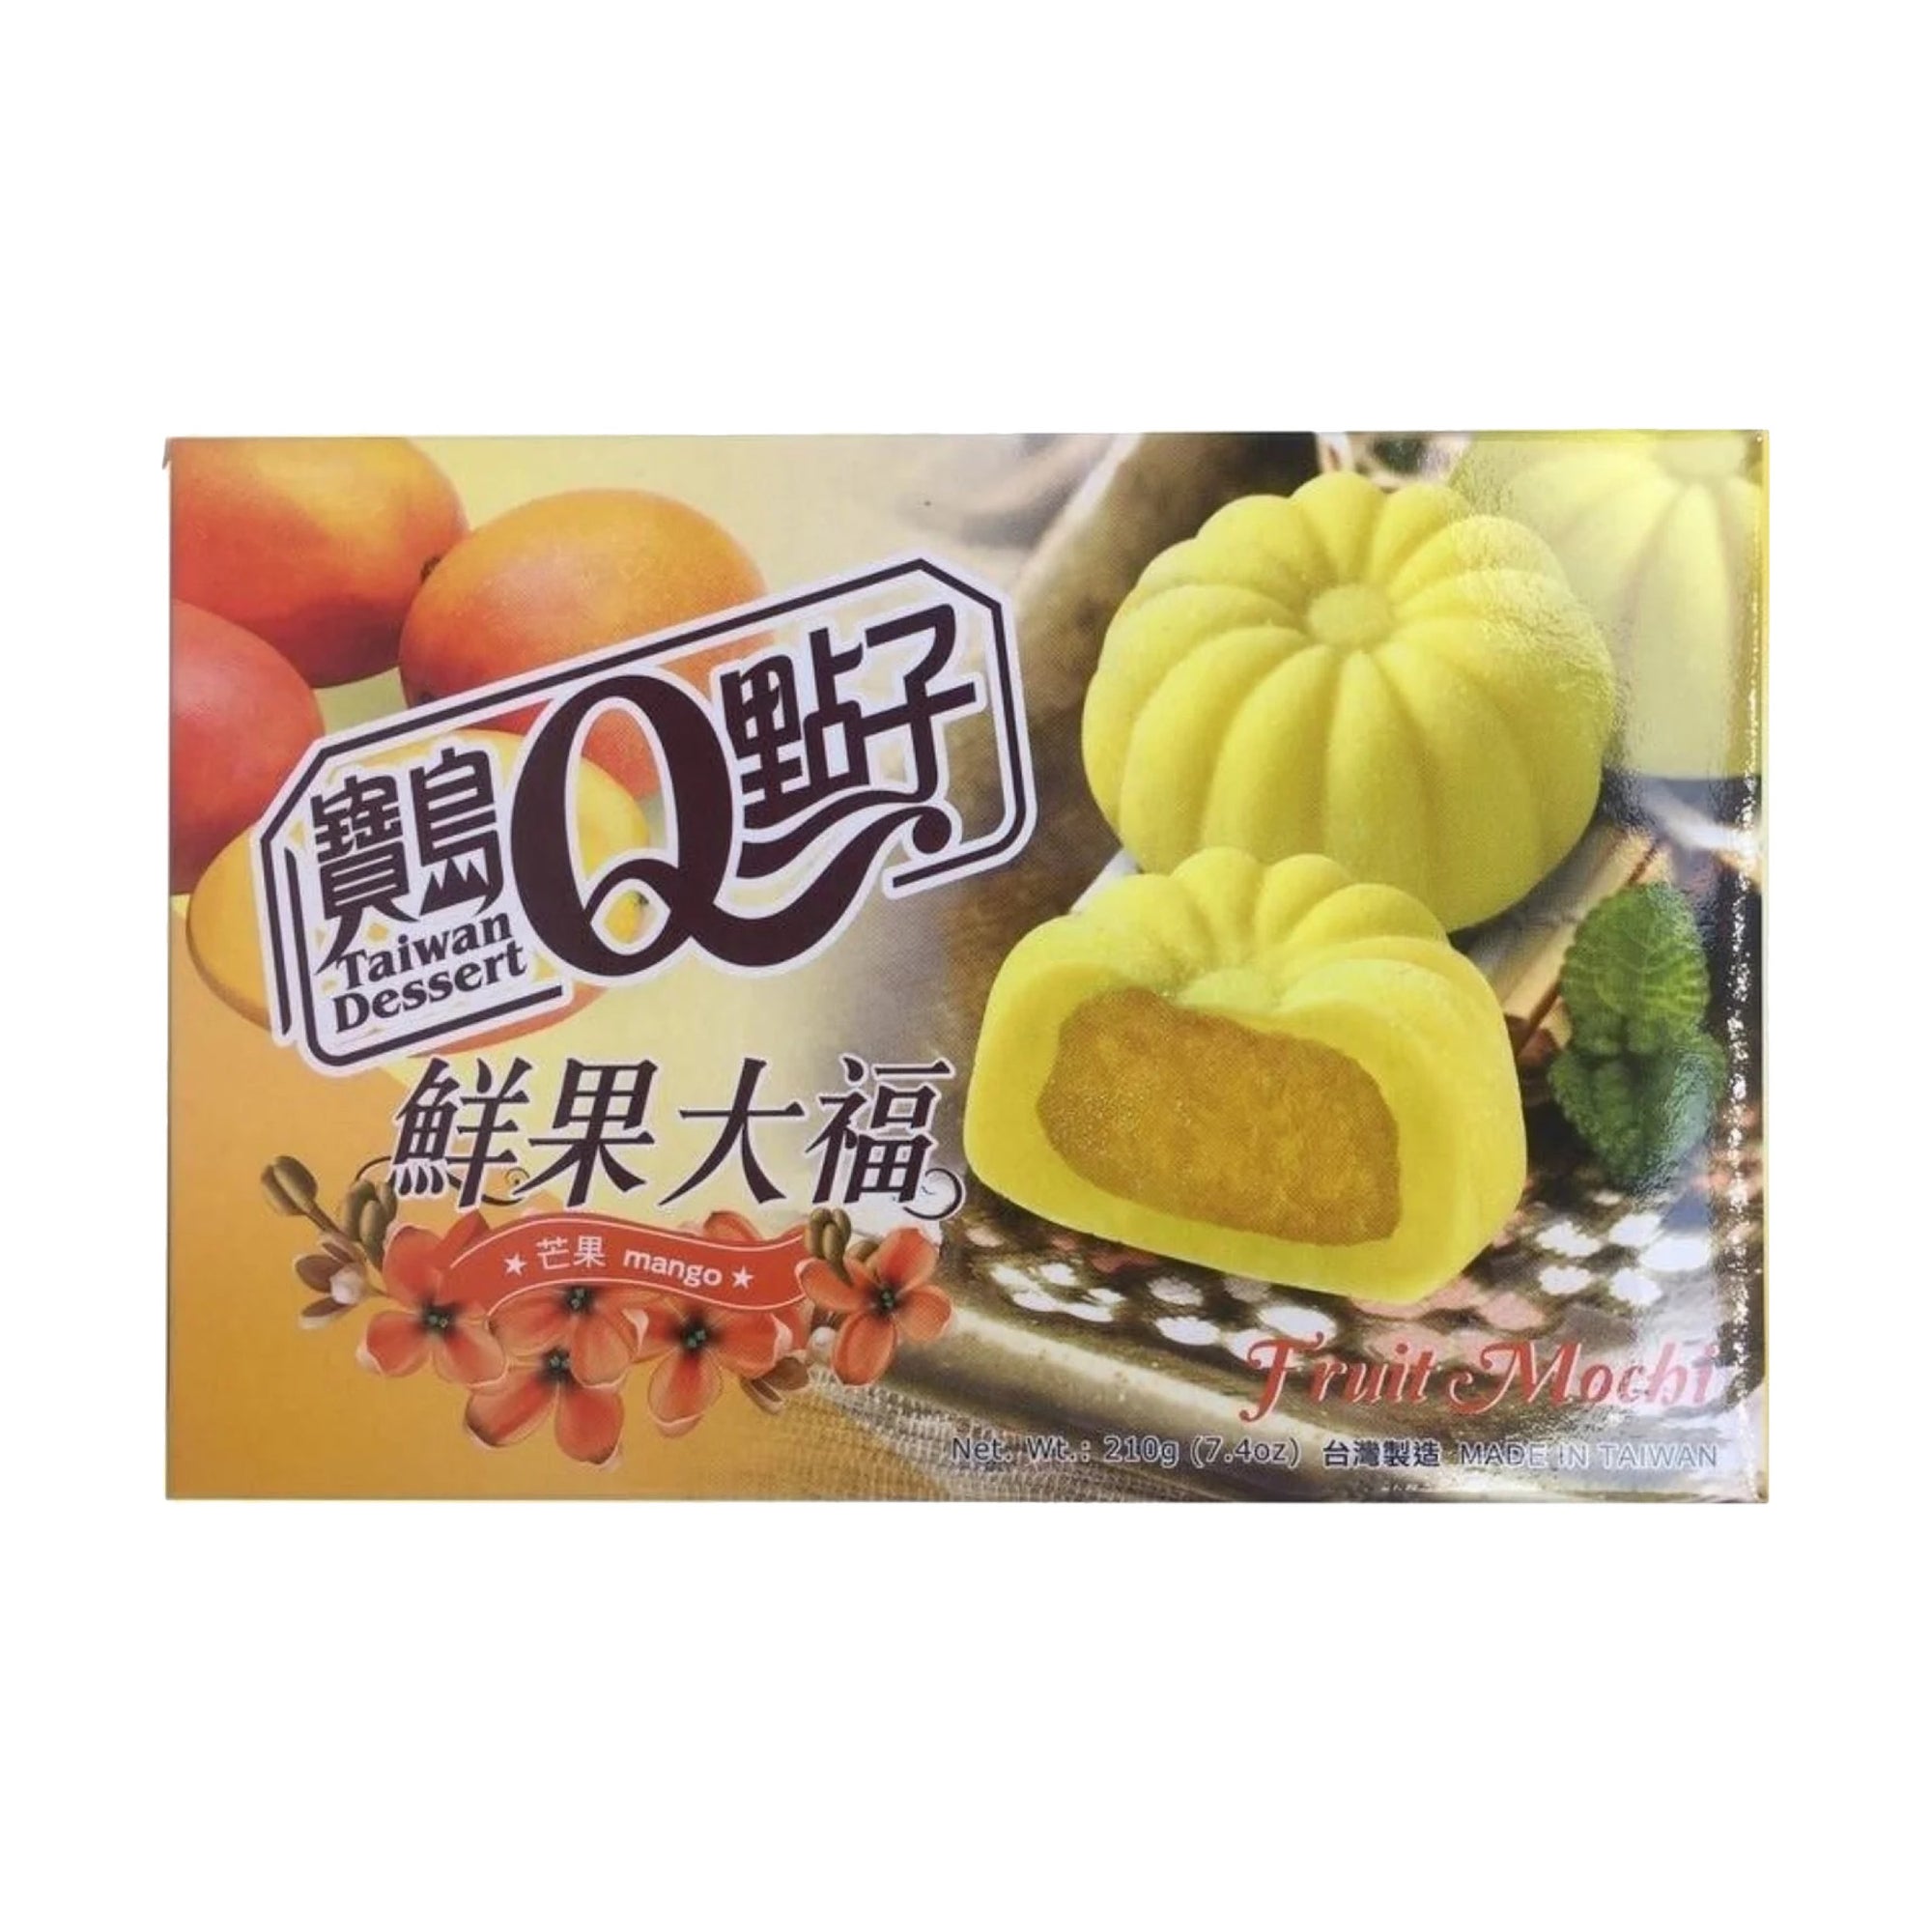 Taiwan Dessert Mango Mochi 210 g